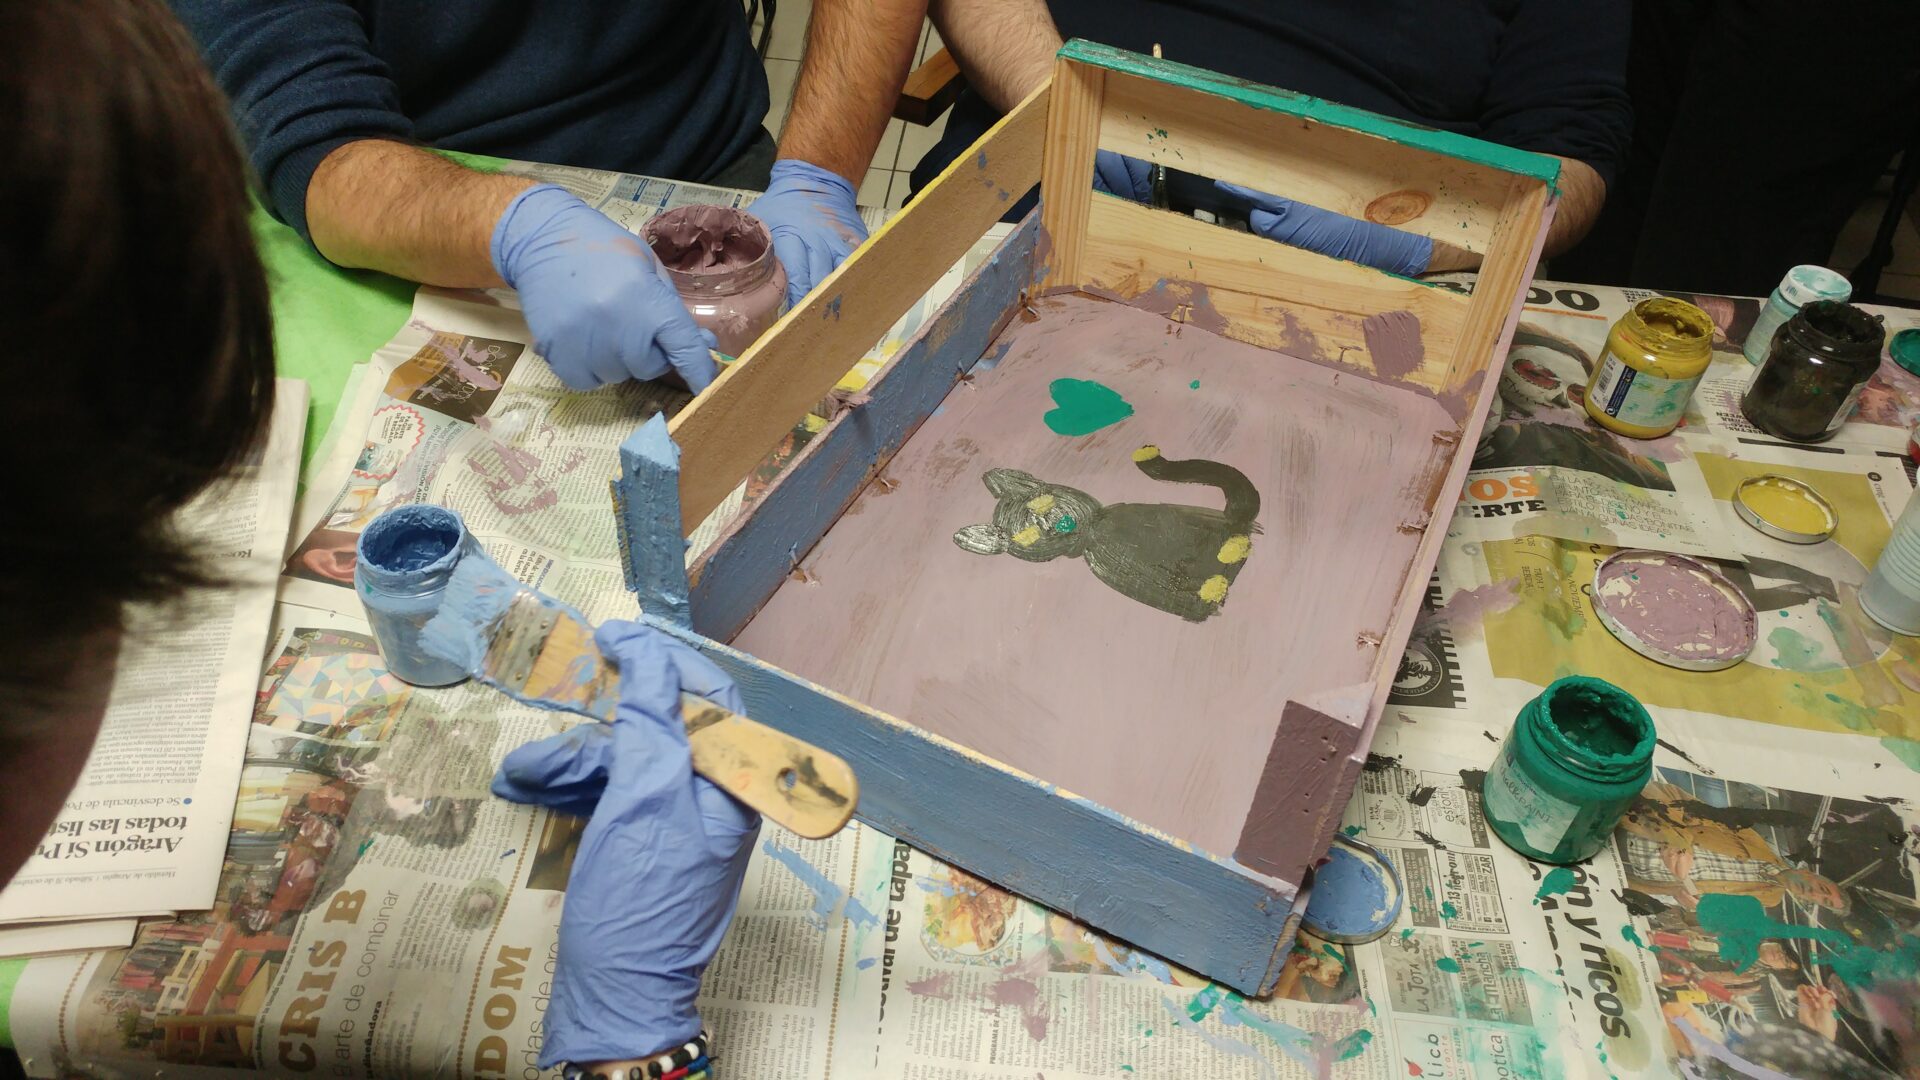 Taller de fabricación de juguetes para animales con material reciclado, aparece una caja de madera que están pintando para convertirla en la cama de un gato